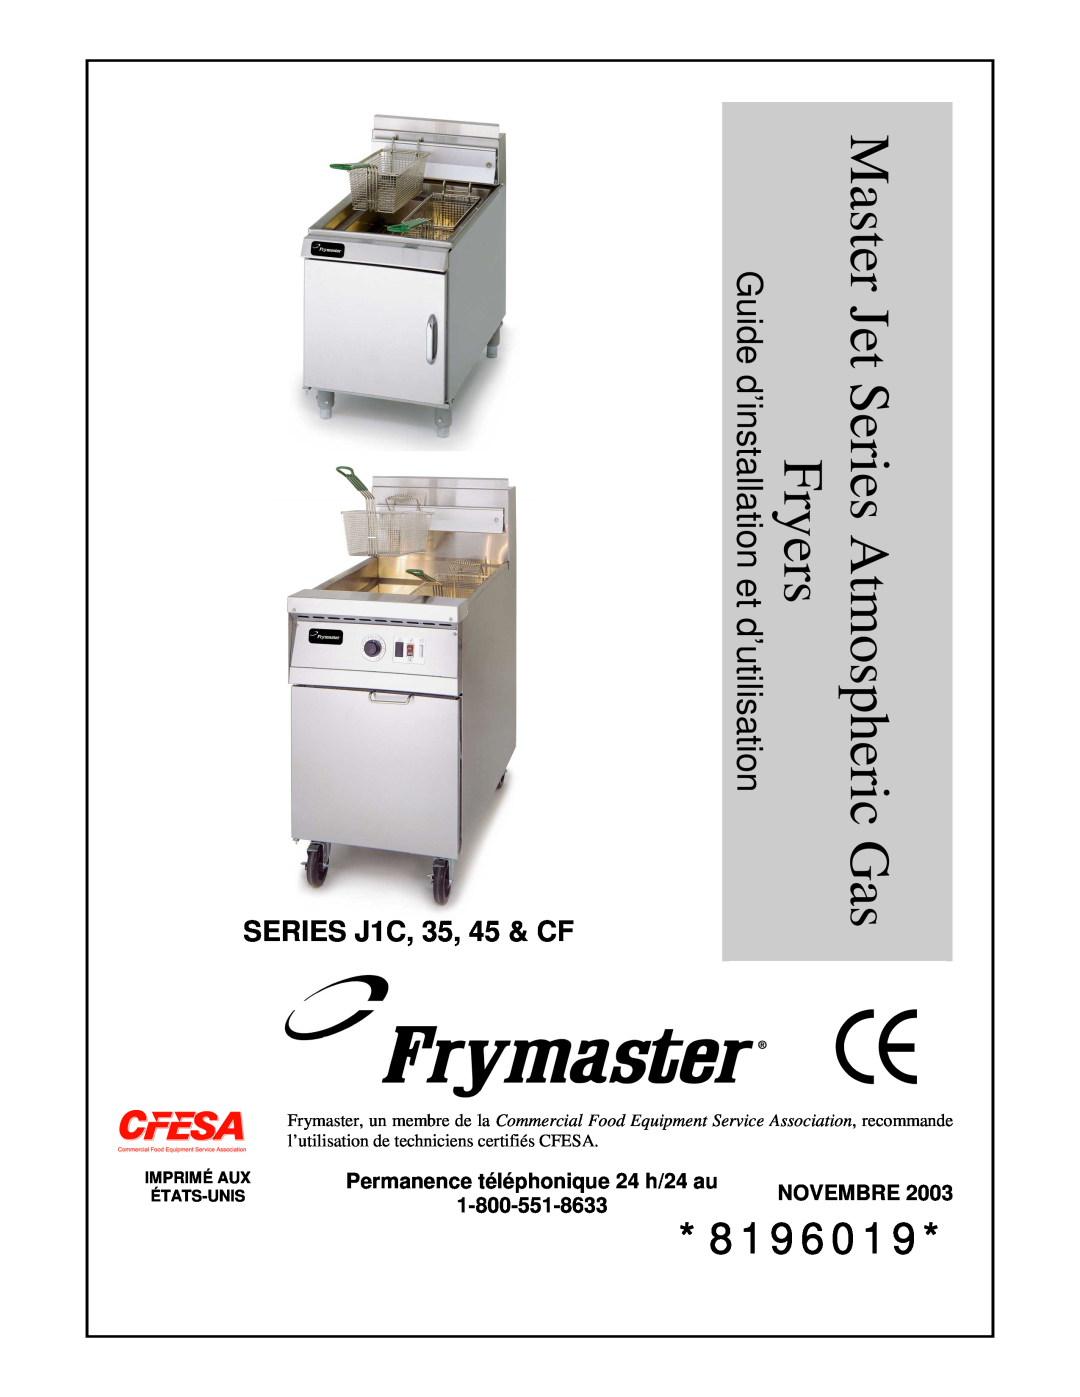 Frymaster manual SERIES J1C, 35, 45 & CF, Permanence téléphonique 24 h/24 au, Novembre, Fryers, Series Atmospheric 